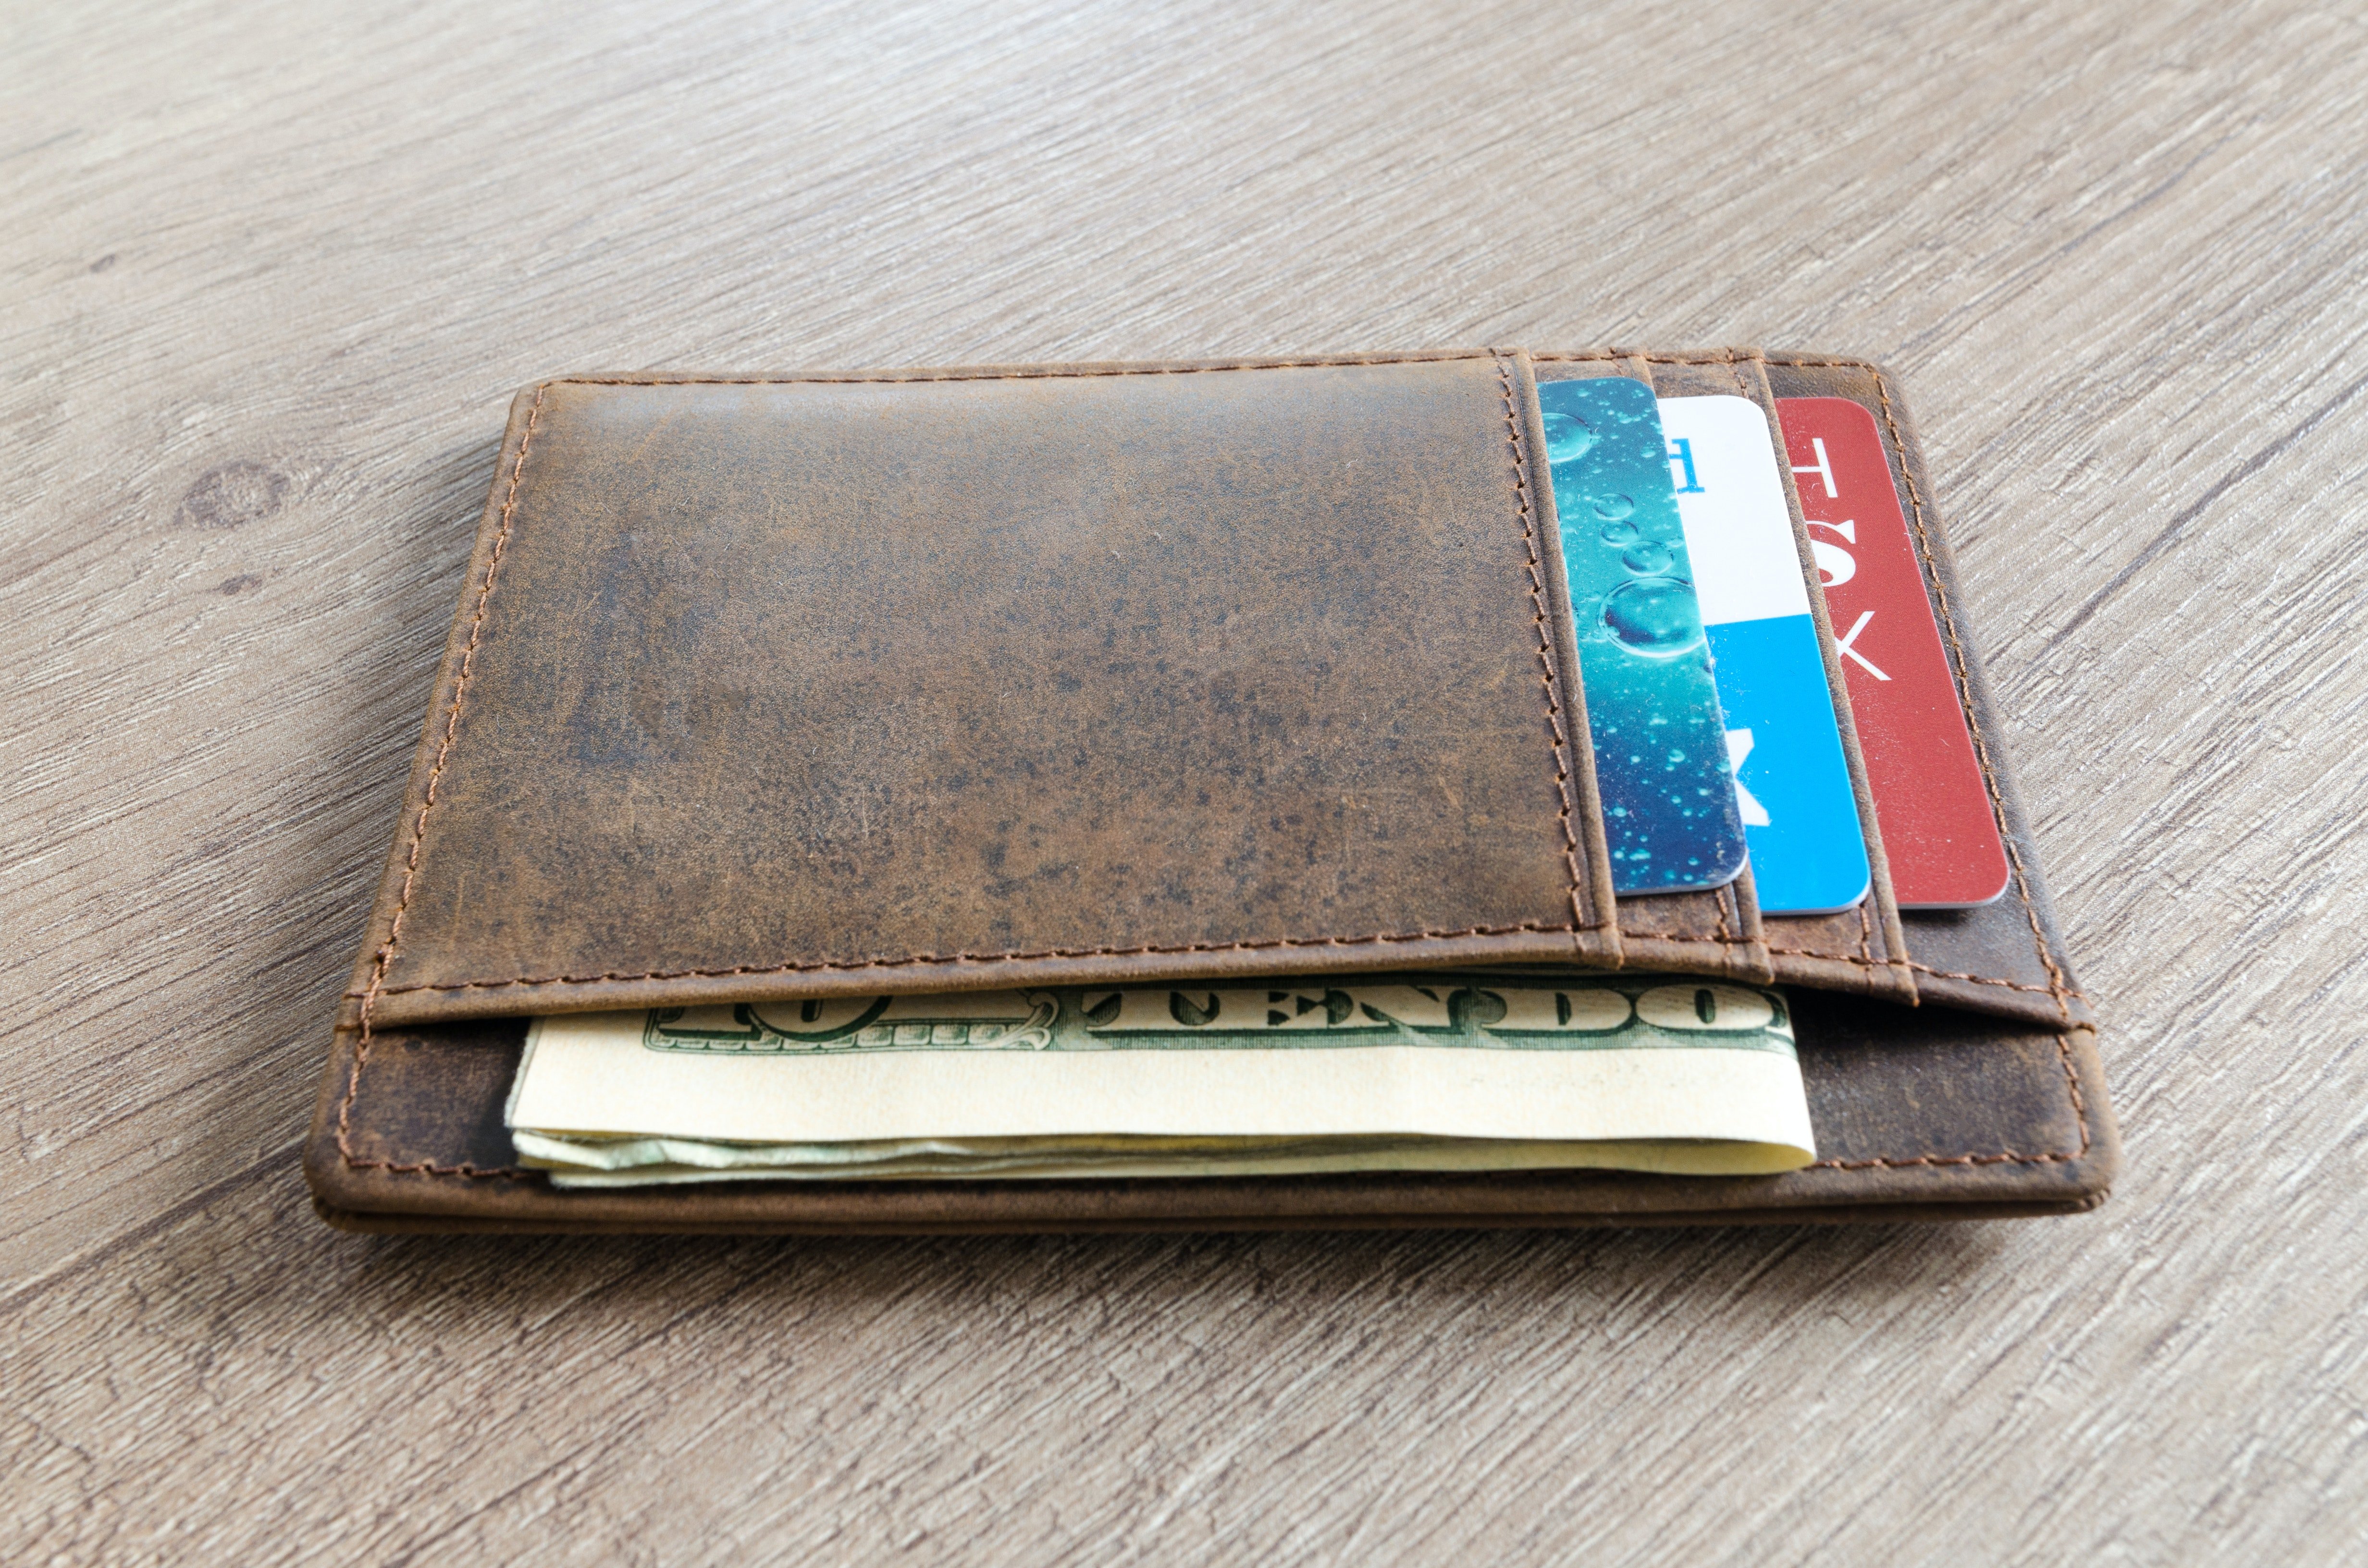 In der Brieftasche befanden sich mehrere 100-Euro-Scheine, die Elizabeth lockten | Quelle: Pexels